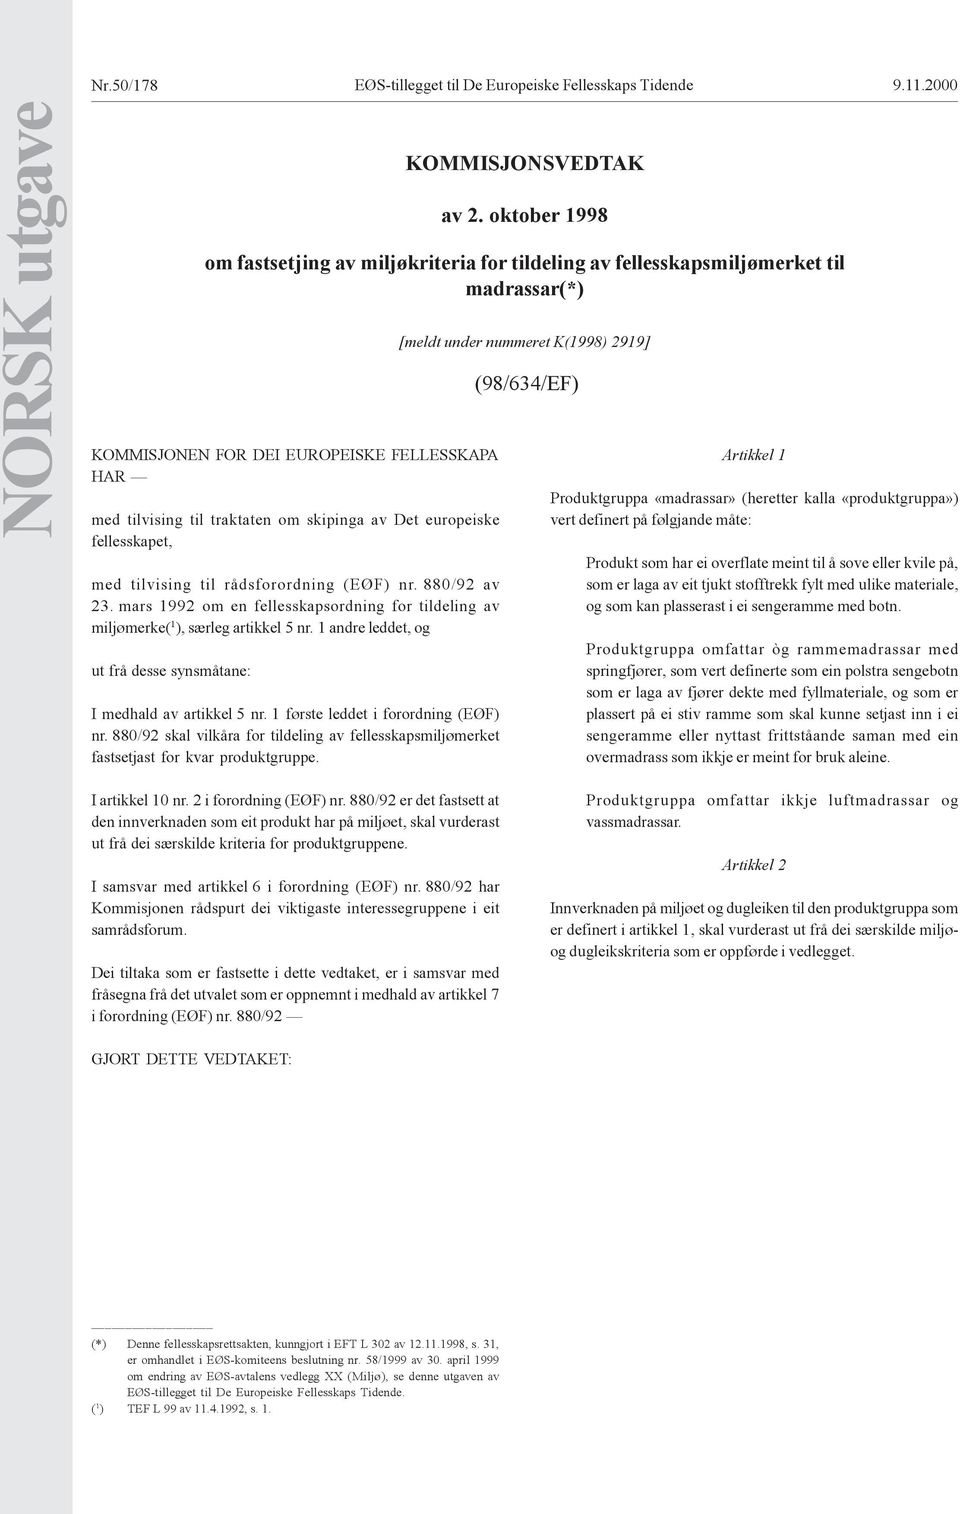 europeiske fellesskapet, med tilvising til rådsforordning (EØF) nr. 880/92 av 23. mars 1992 om en fellesskapsordning for tildeling av miljømerke( 1 ), særleg artikkel 5 nr.